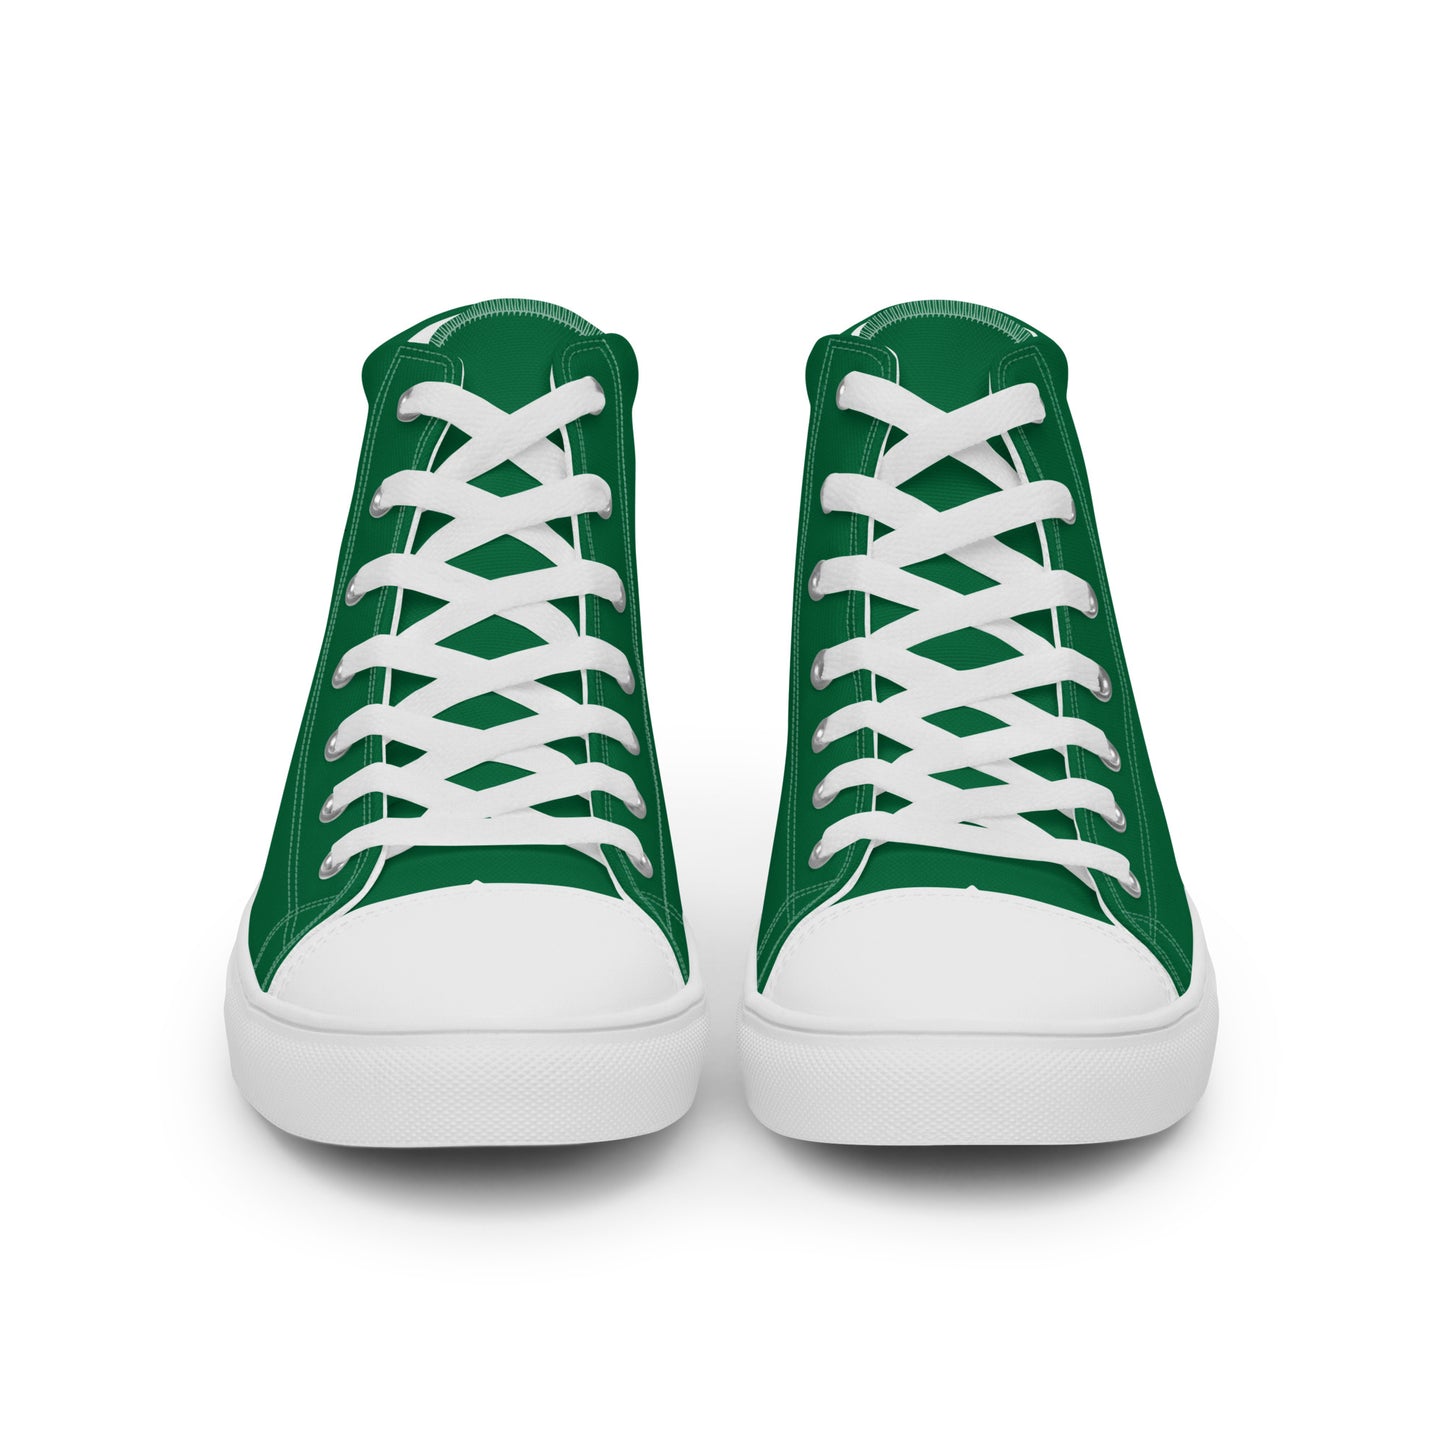 Bolivia - Women - Green - High top shoes